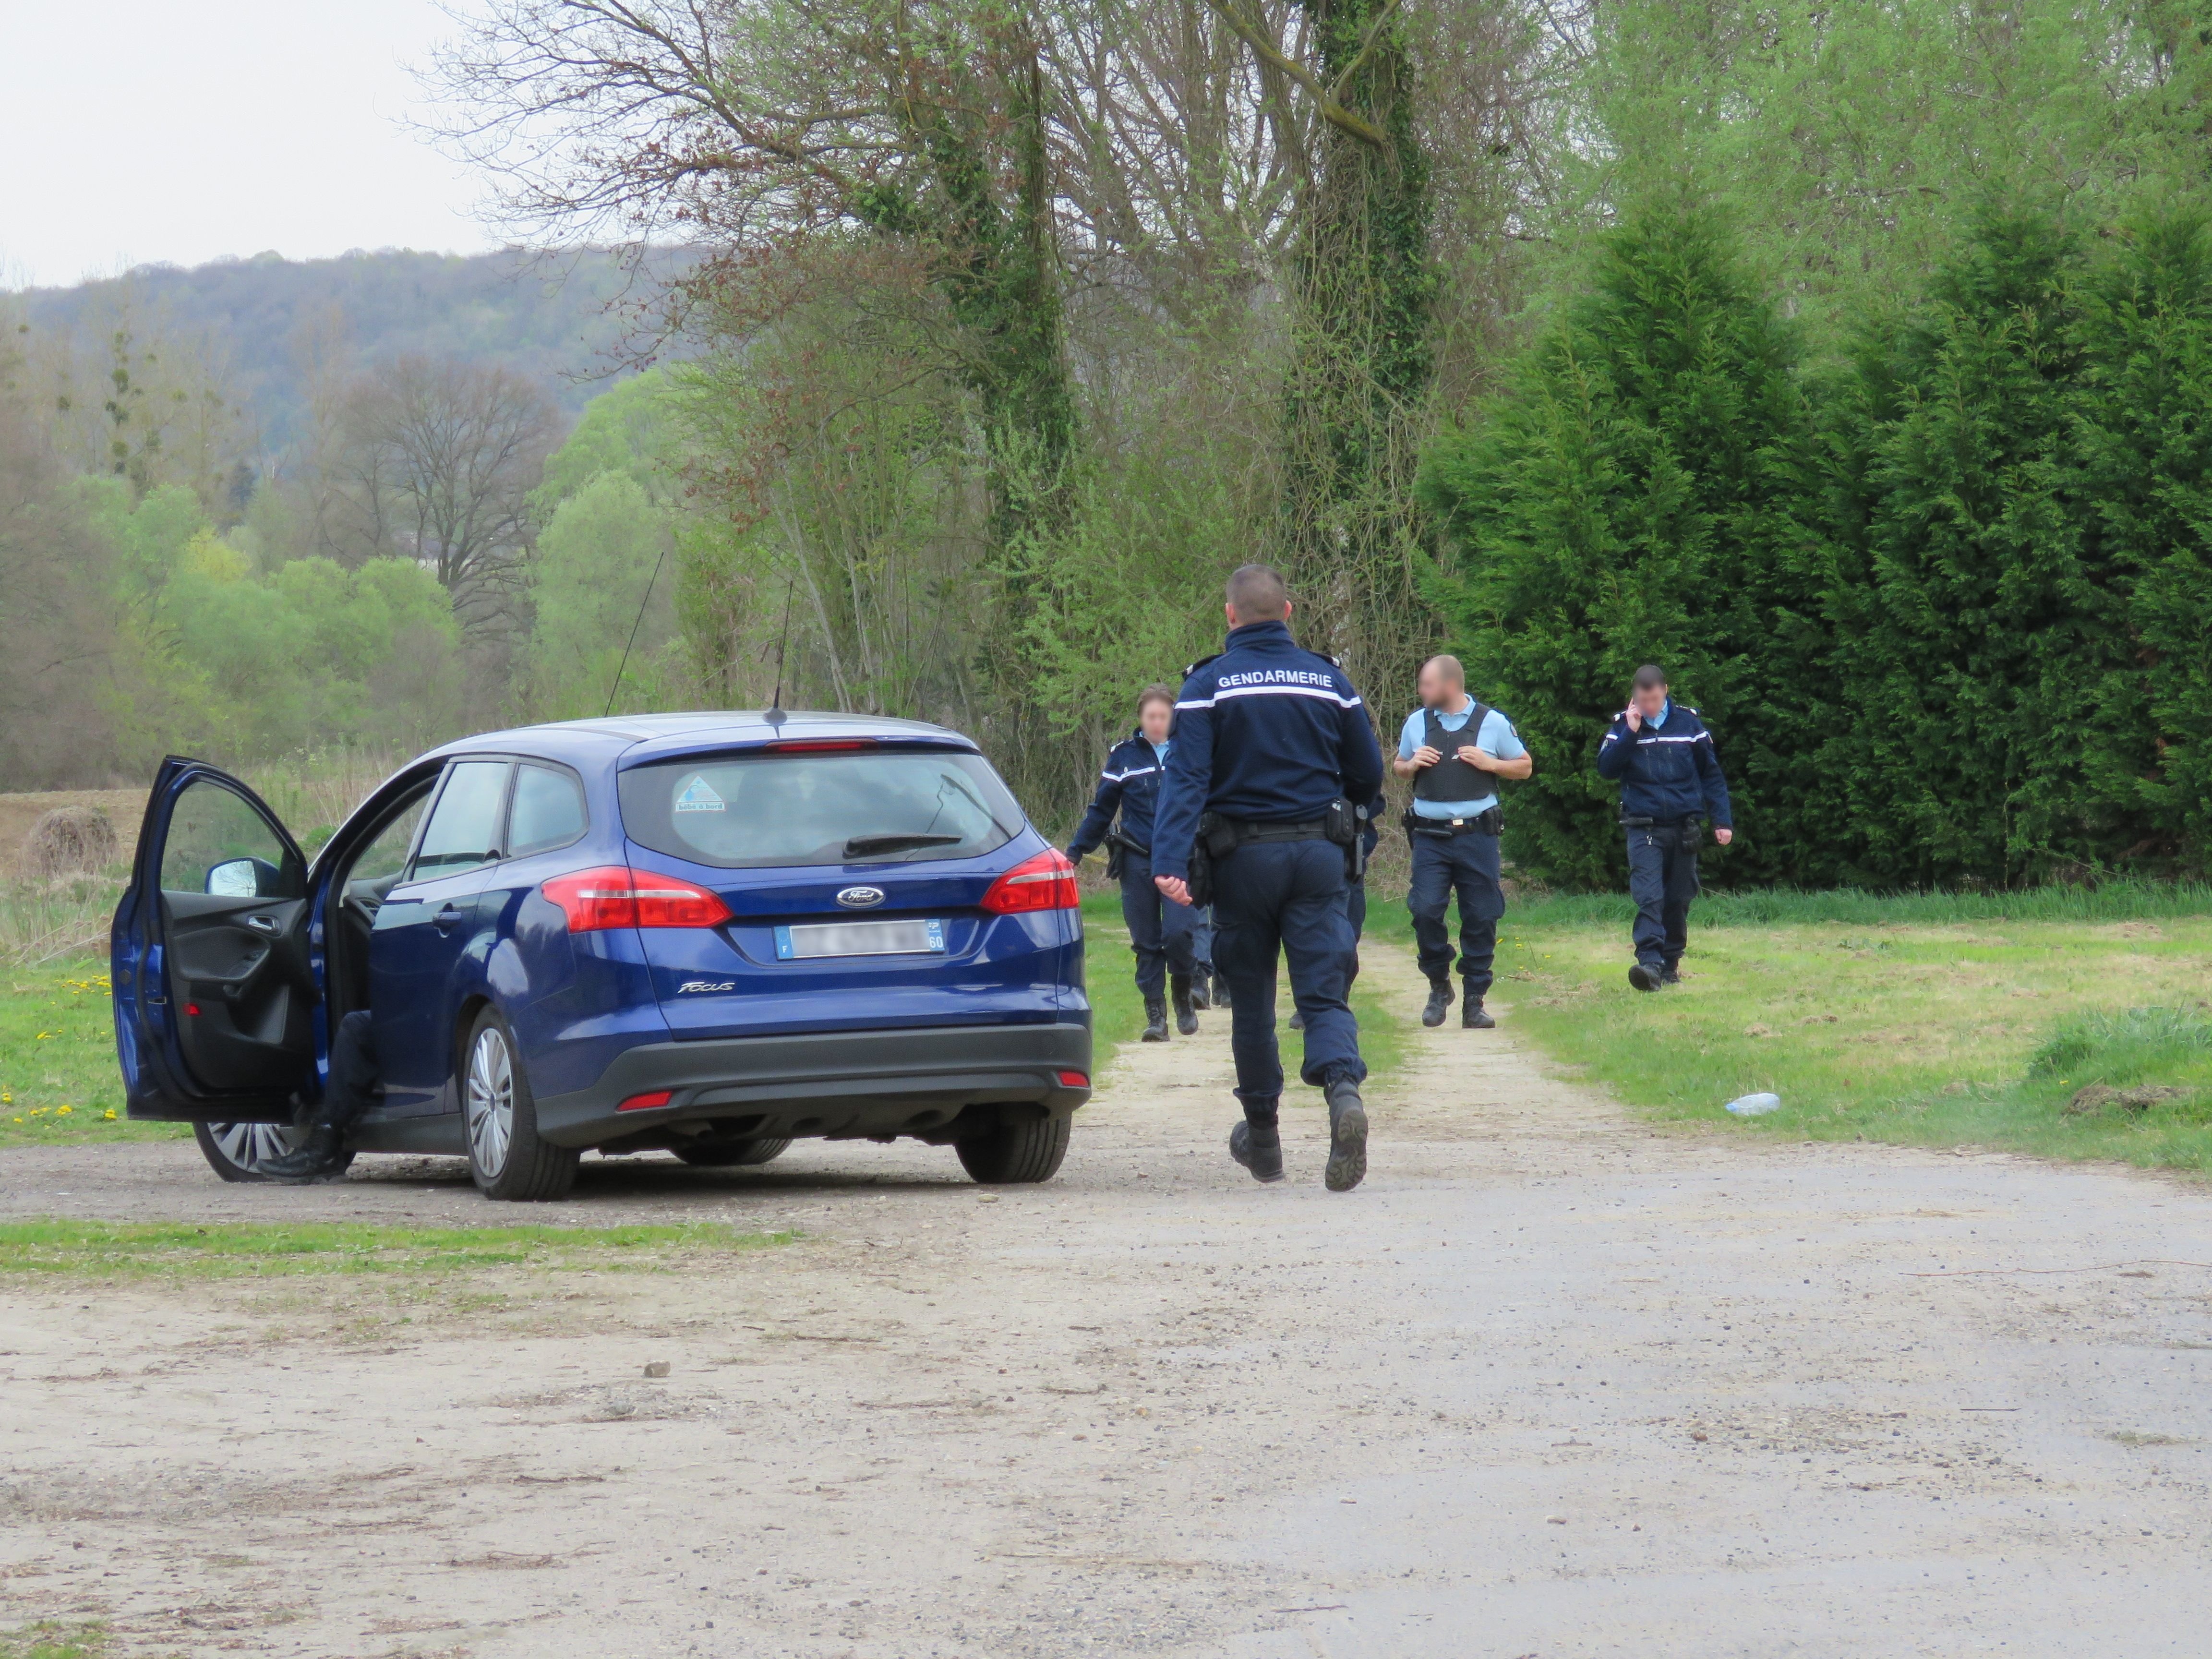 Après une première recherche infructueuse, les gendarmes ont repris les opérations ce vendredi matin avant de retrouver l'octogénaire disparu depuis mardi. (Illustration) LP/S.F.